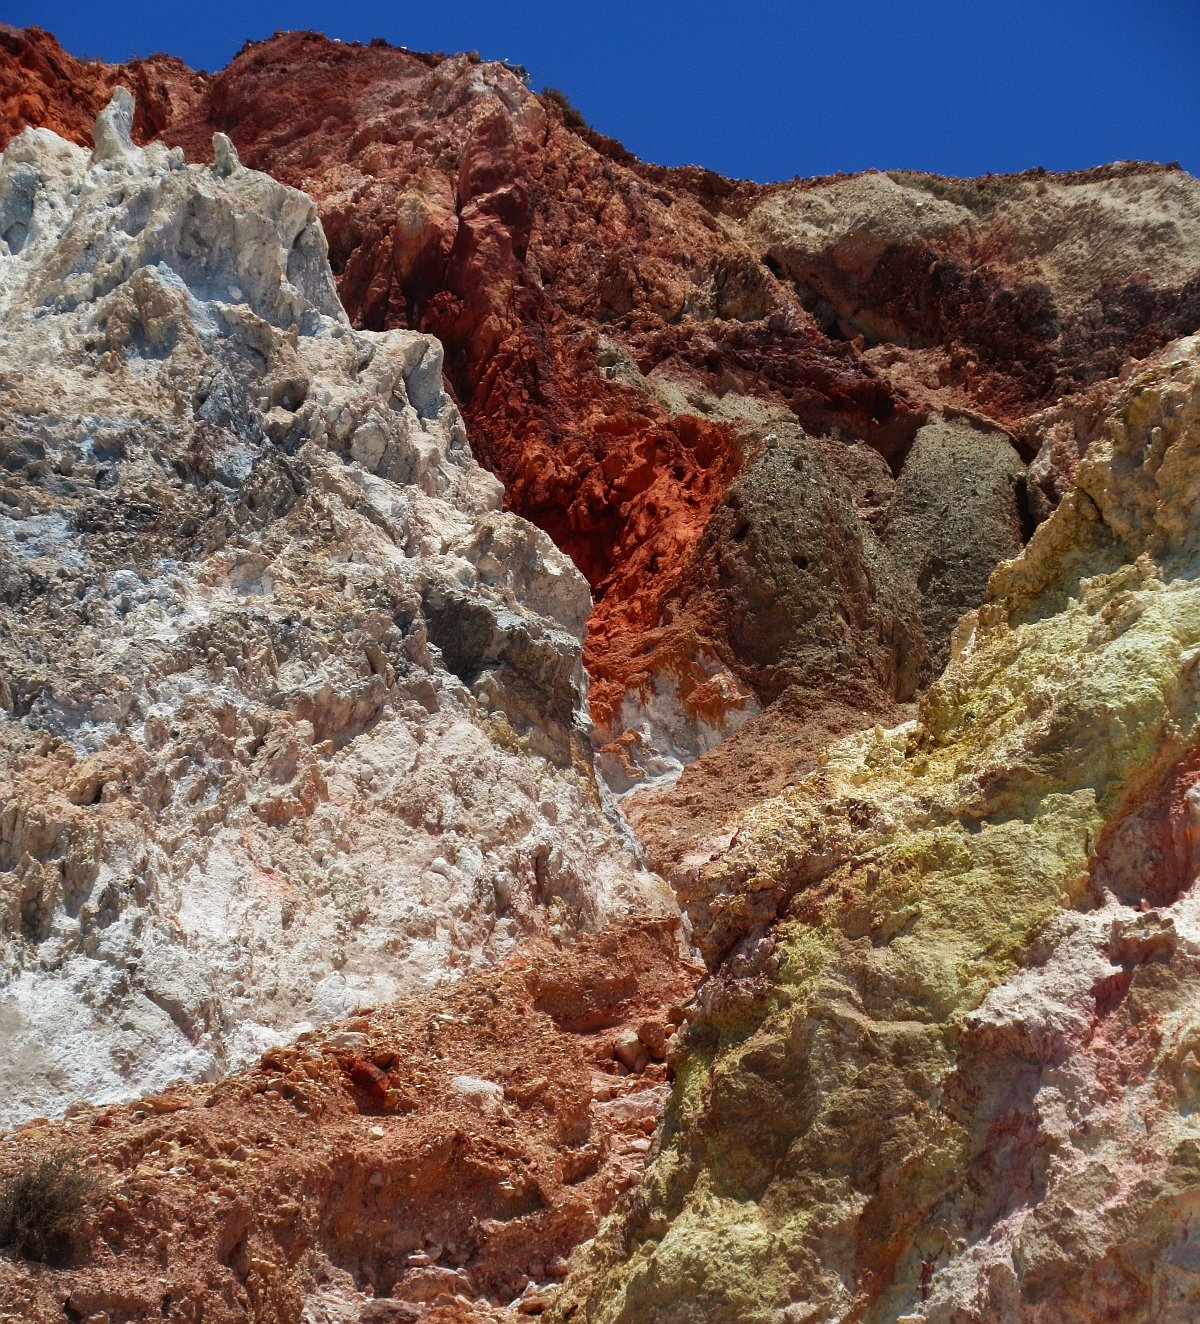 Apropó kristály, Agiosz Ioanniszban, az azonos nevű kolostor alatti strandon az egyik irányban öklömnyi kvarckristályok csillognak szerteszét az egész szigetre jellemző sárga-vörös-fehér partfalakon. 